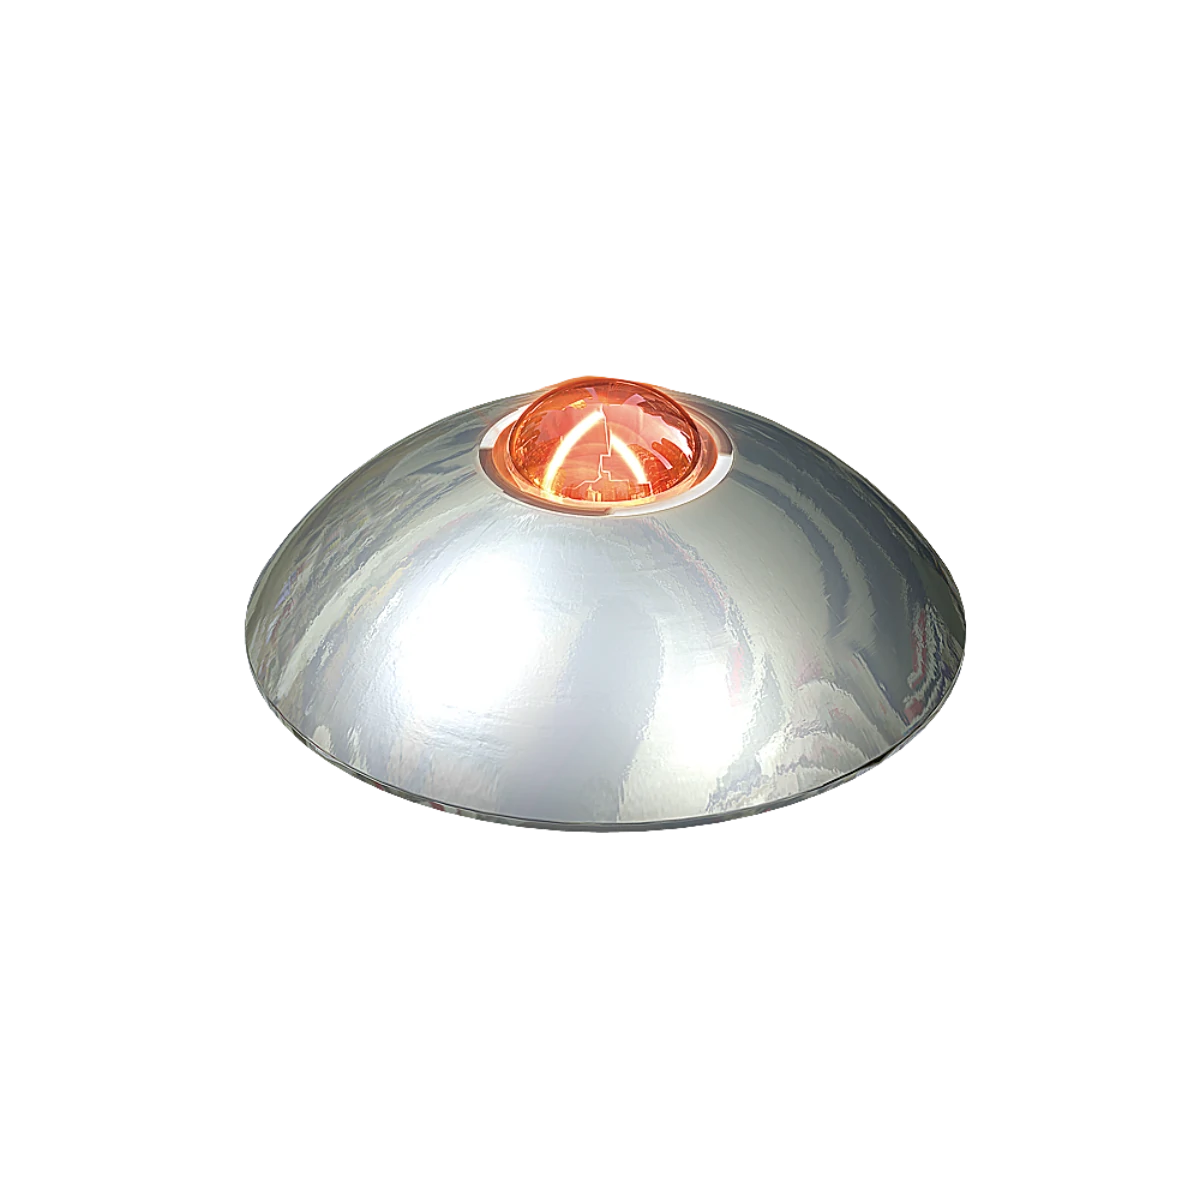 El botón acero inoxidable ofrece una visibilidad esencial en entornos de poca luz gracias a su luz led. Funciona también como reductor de velocidad